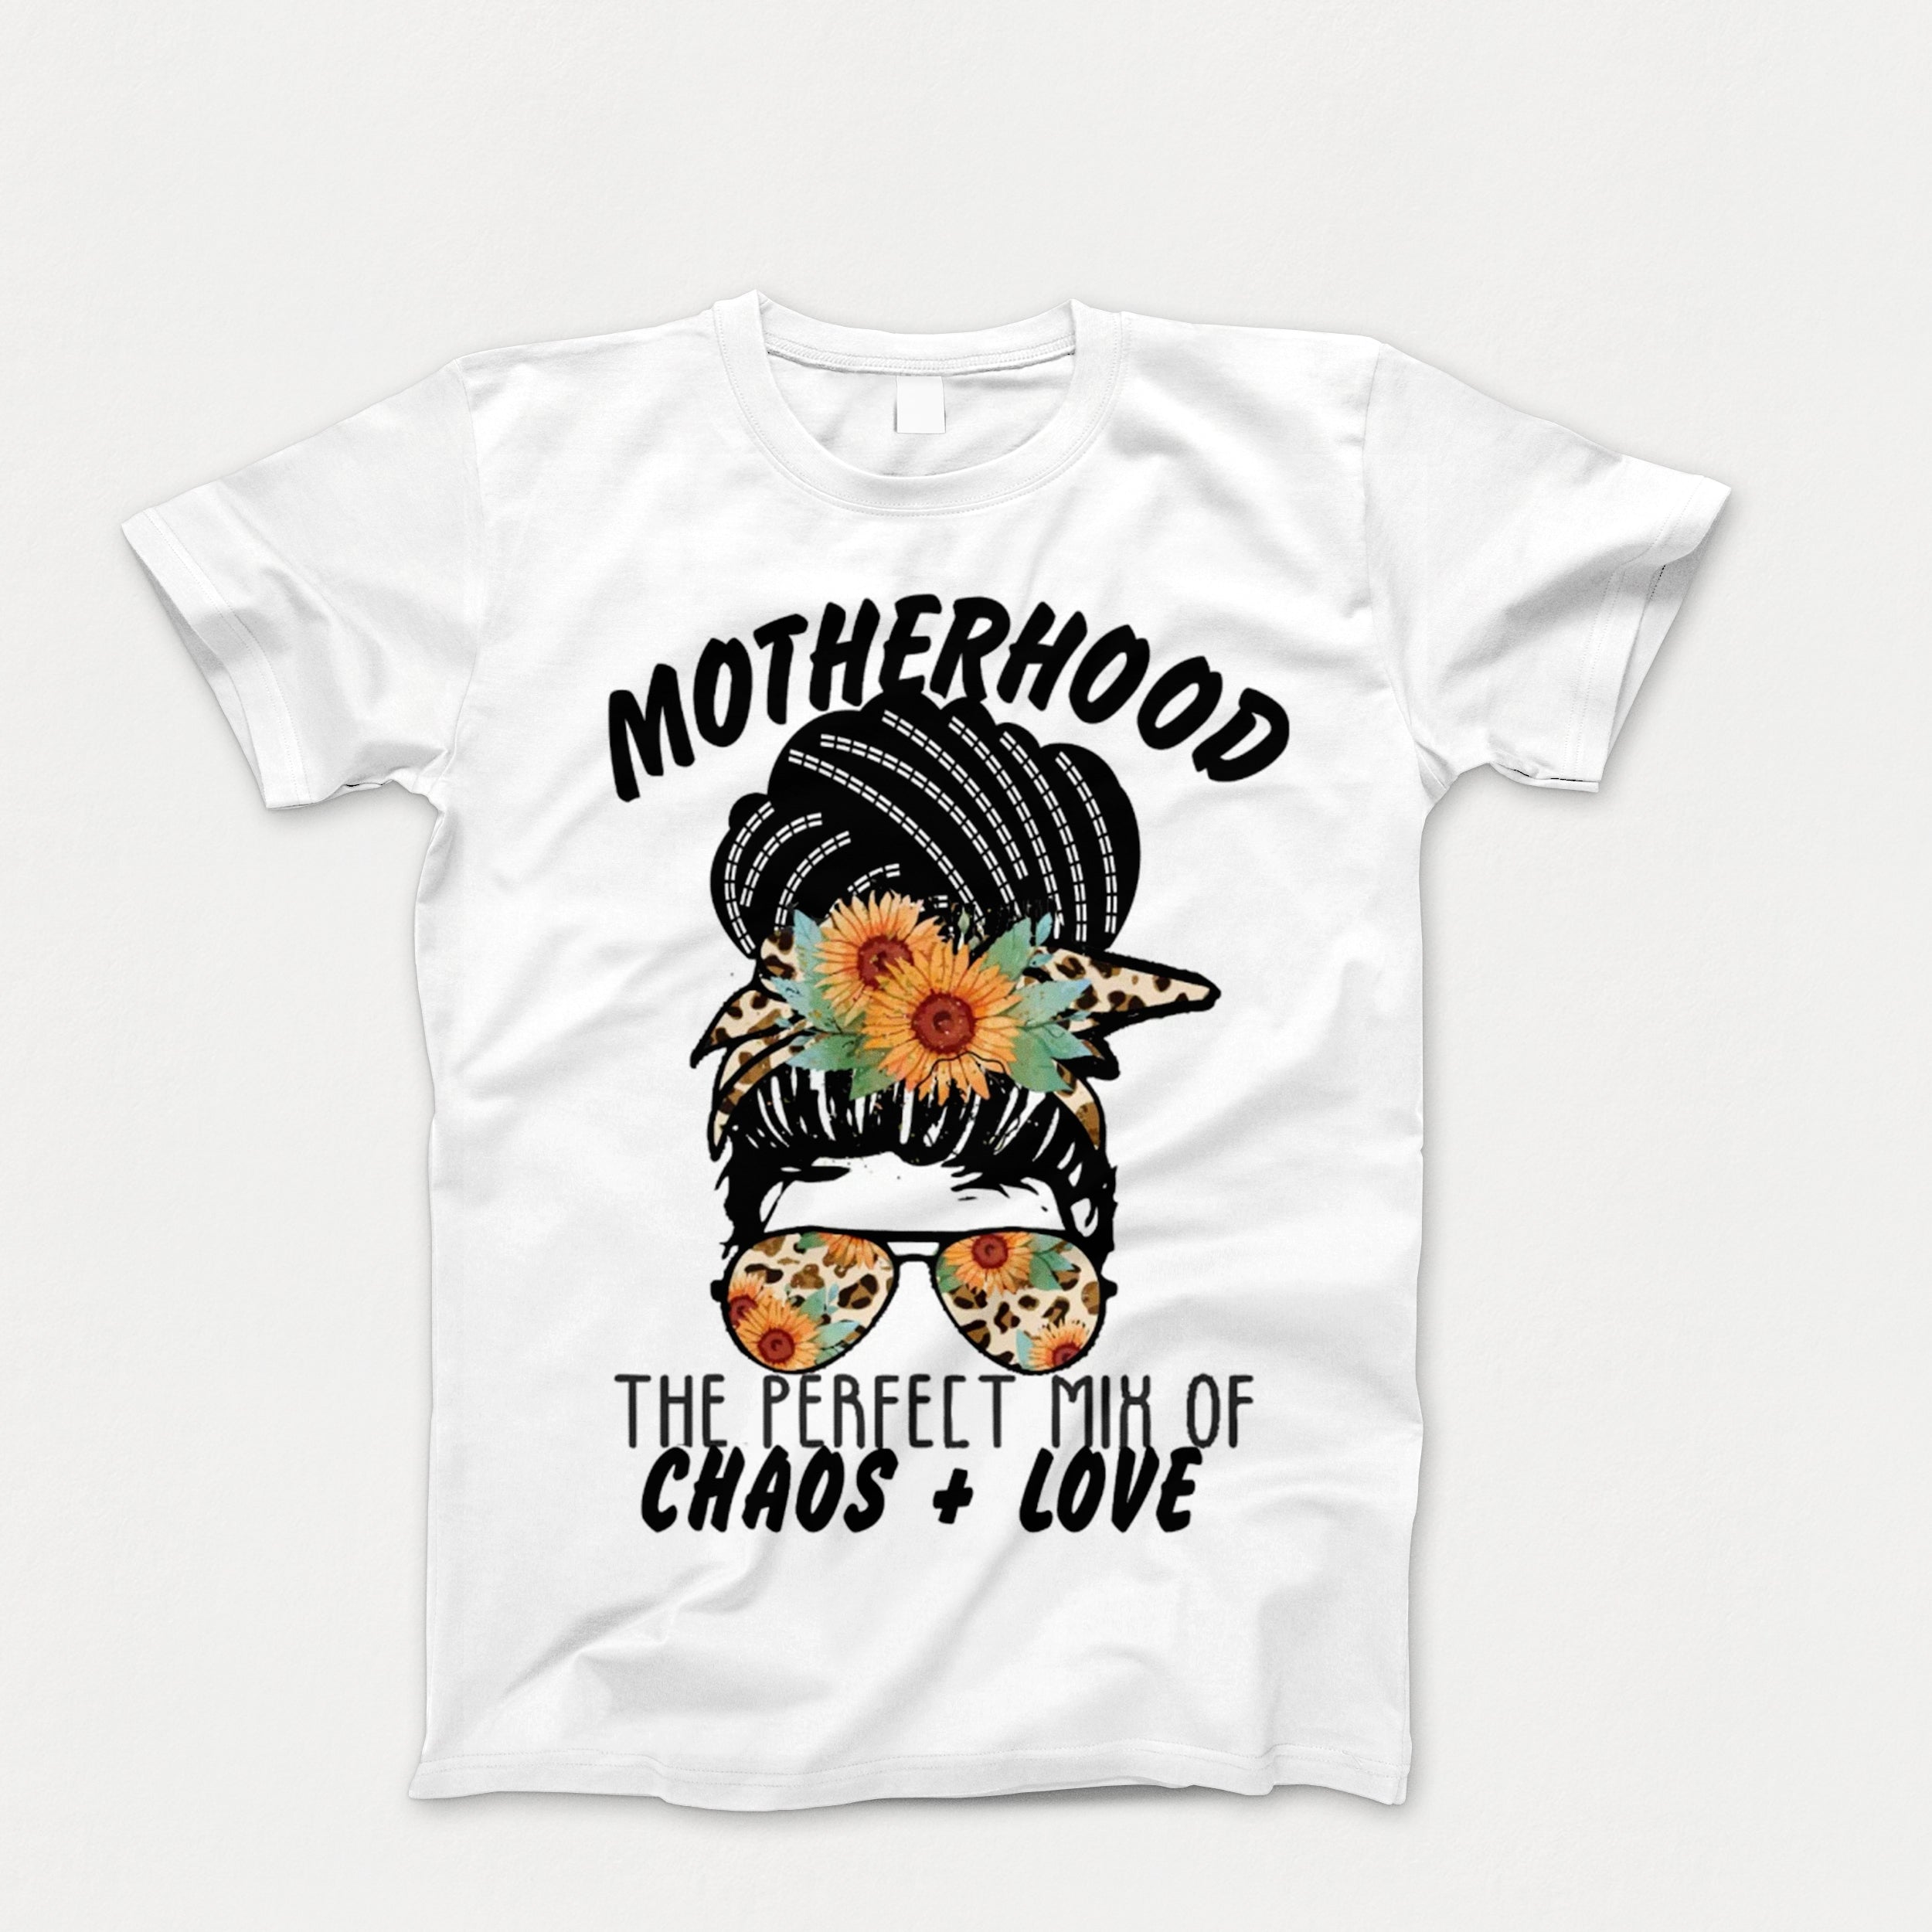 Unisex Adult Motherhood Tee Shirt